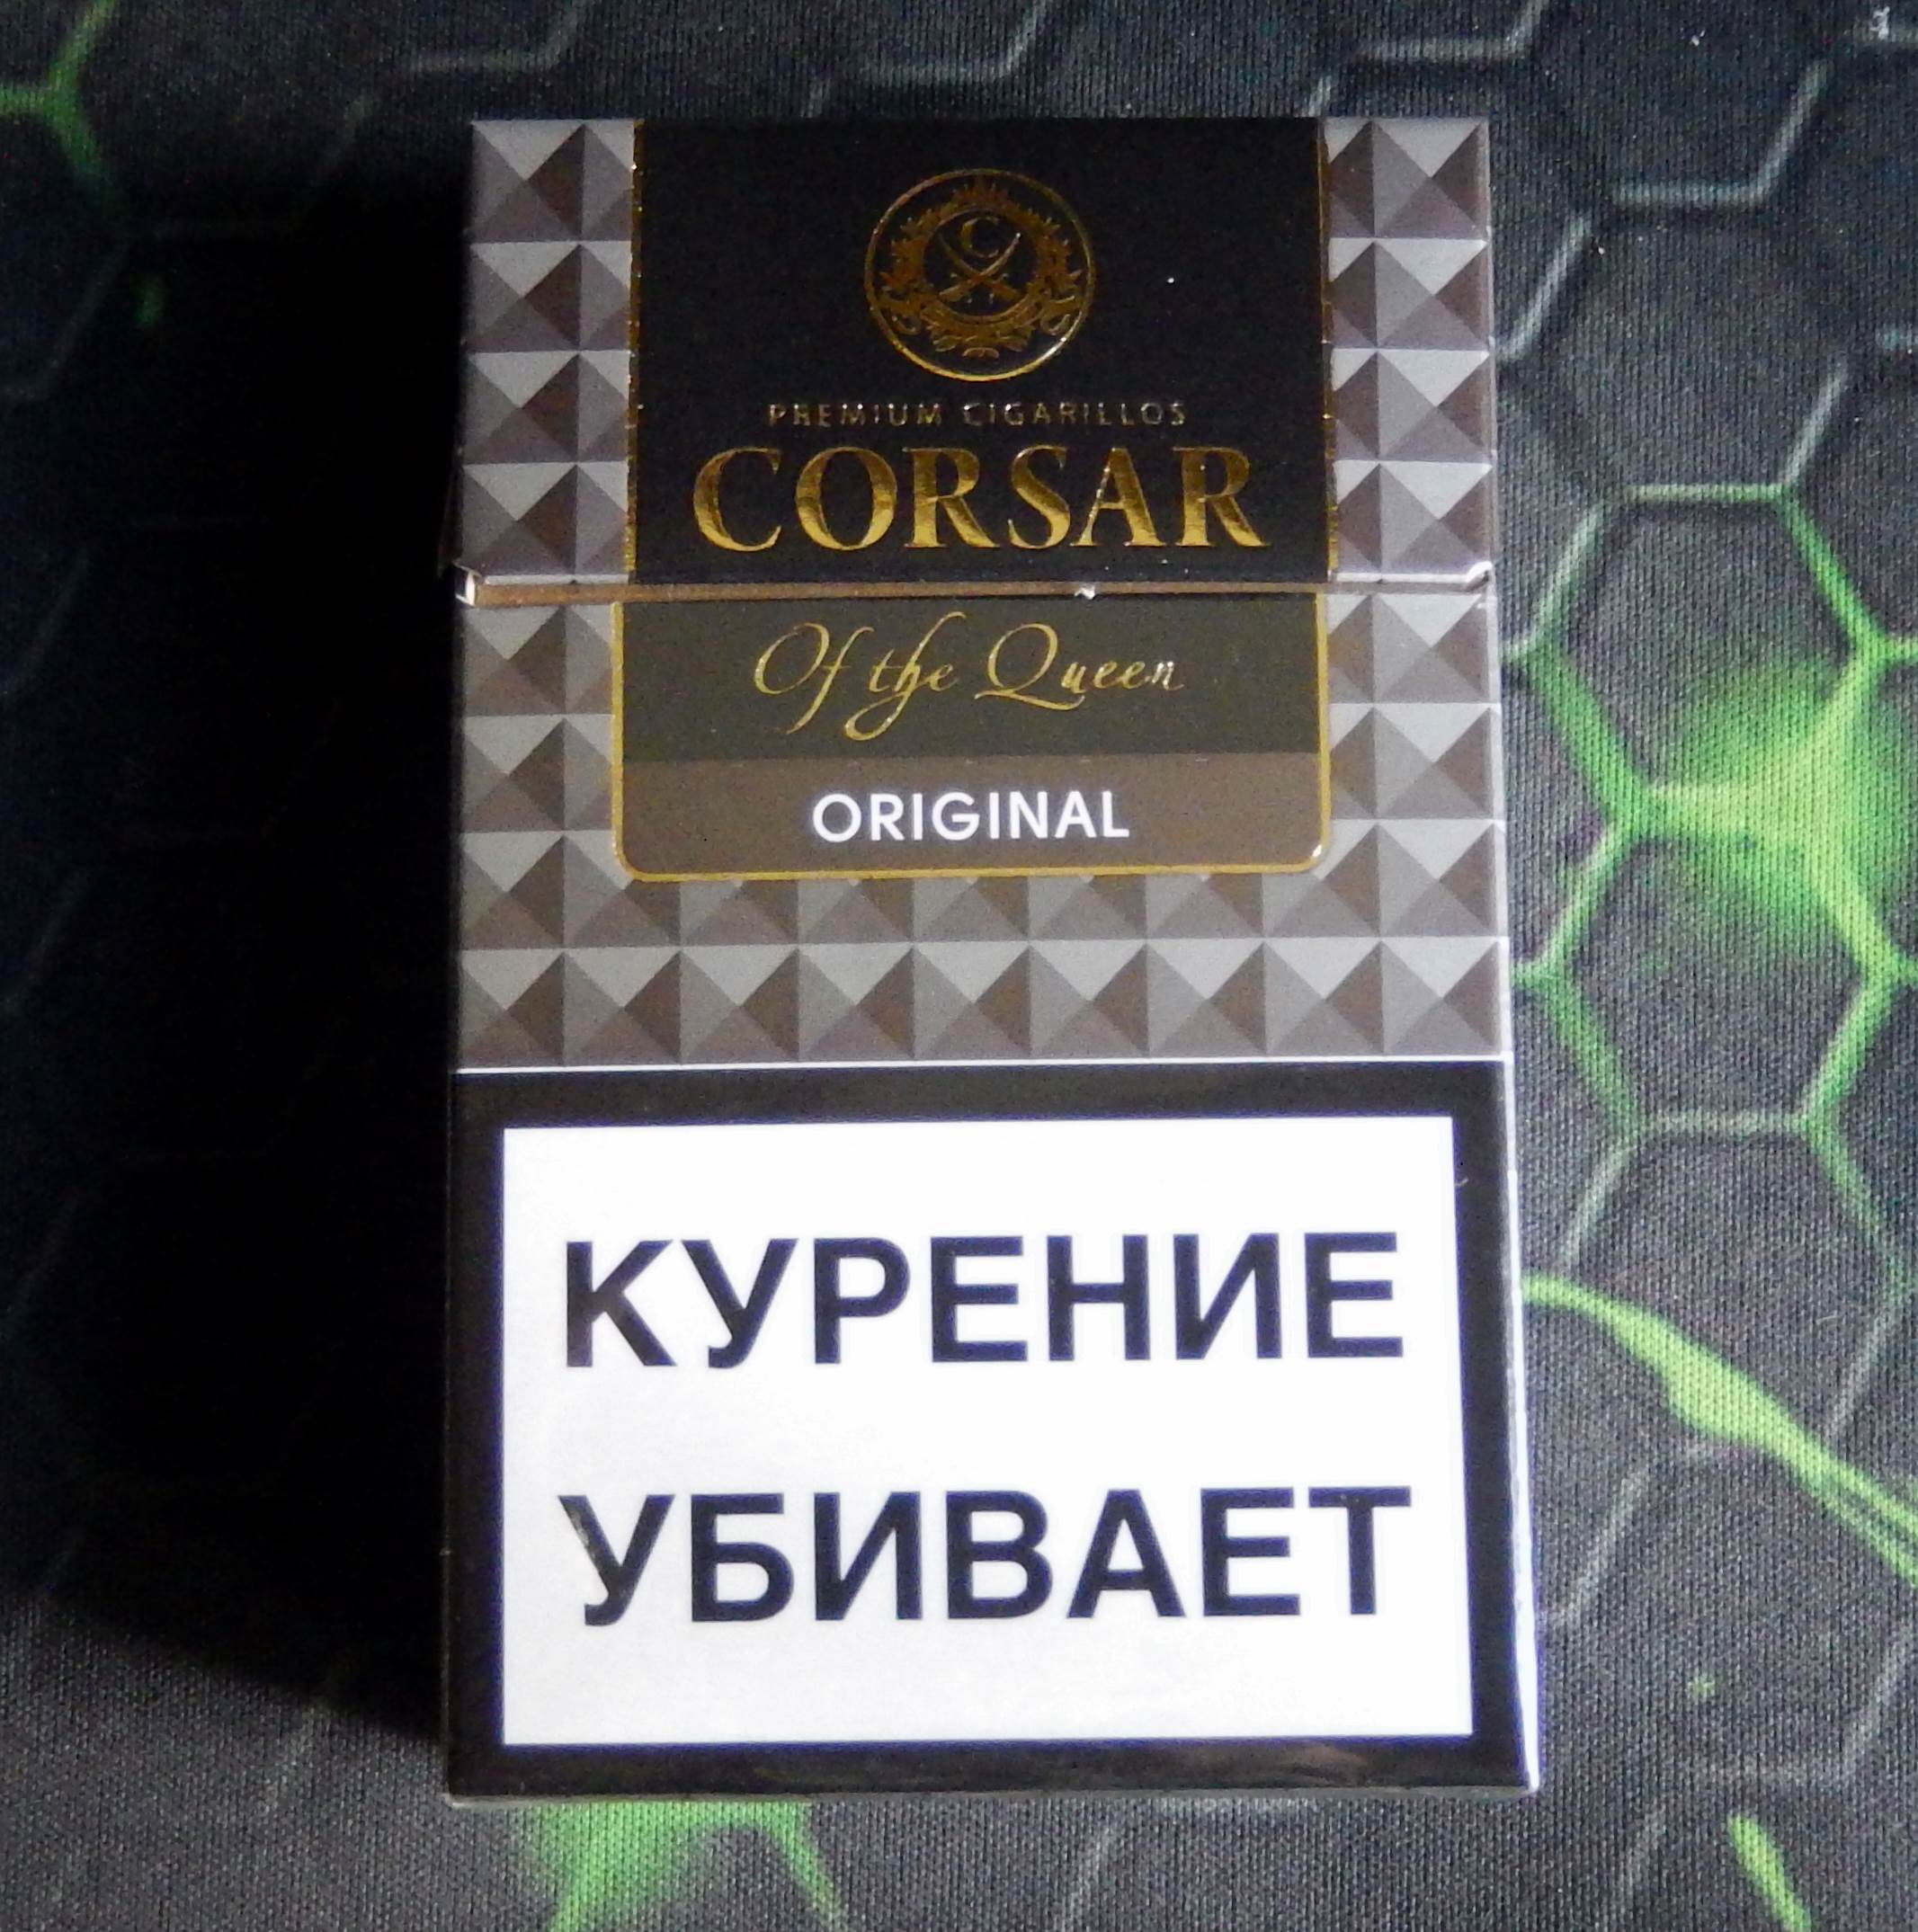 Крепкие сигареты цена. Corsair Classic сигареты. Corsair Original табак. Корсар сигареты Original. Corsair Original сигареты.